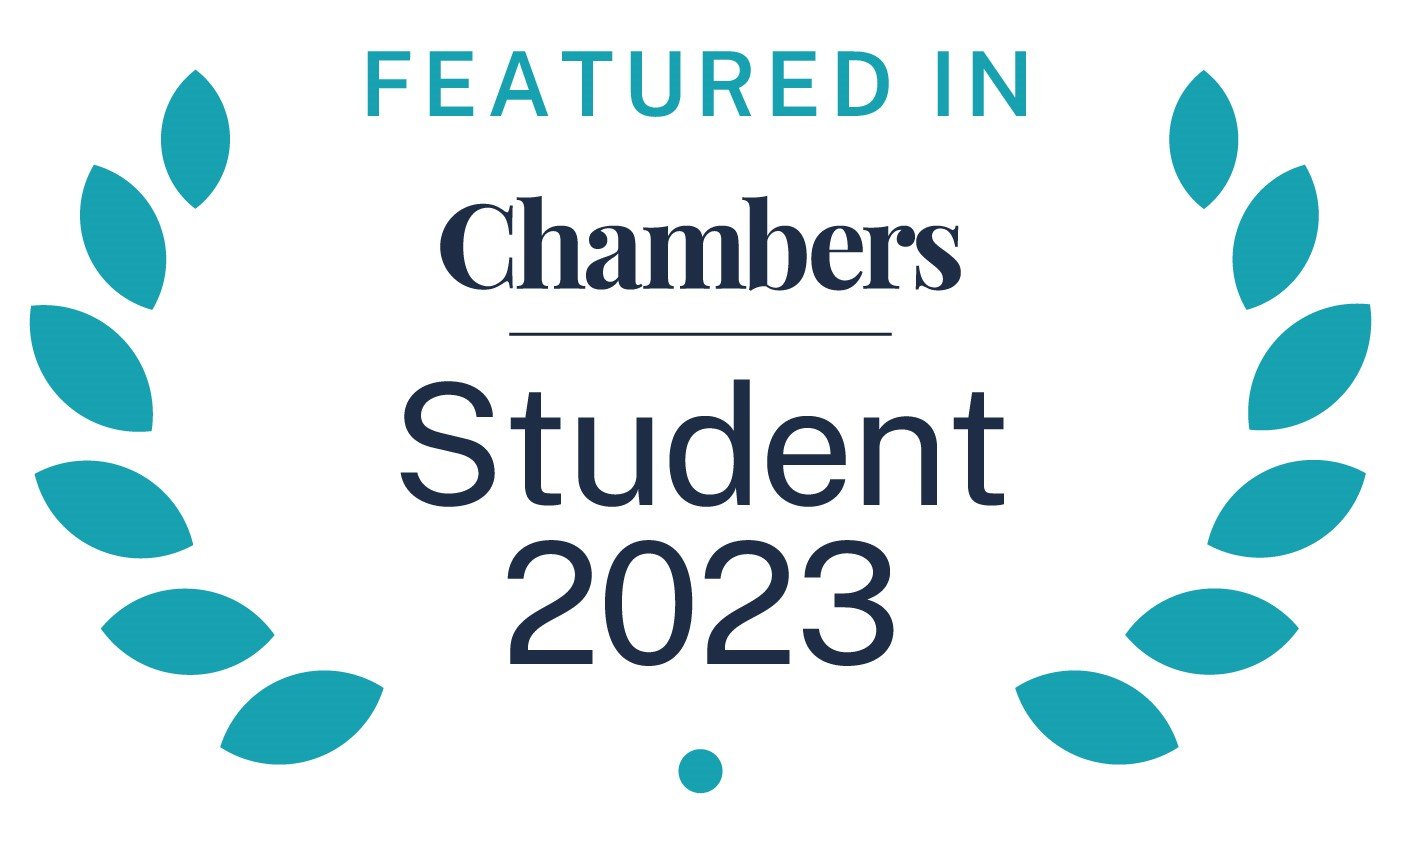 Chambers Student 2023